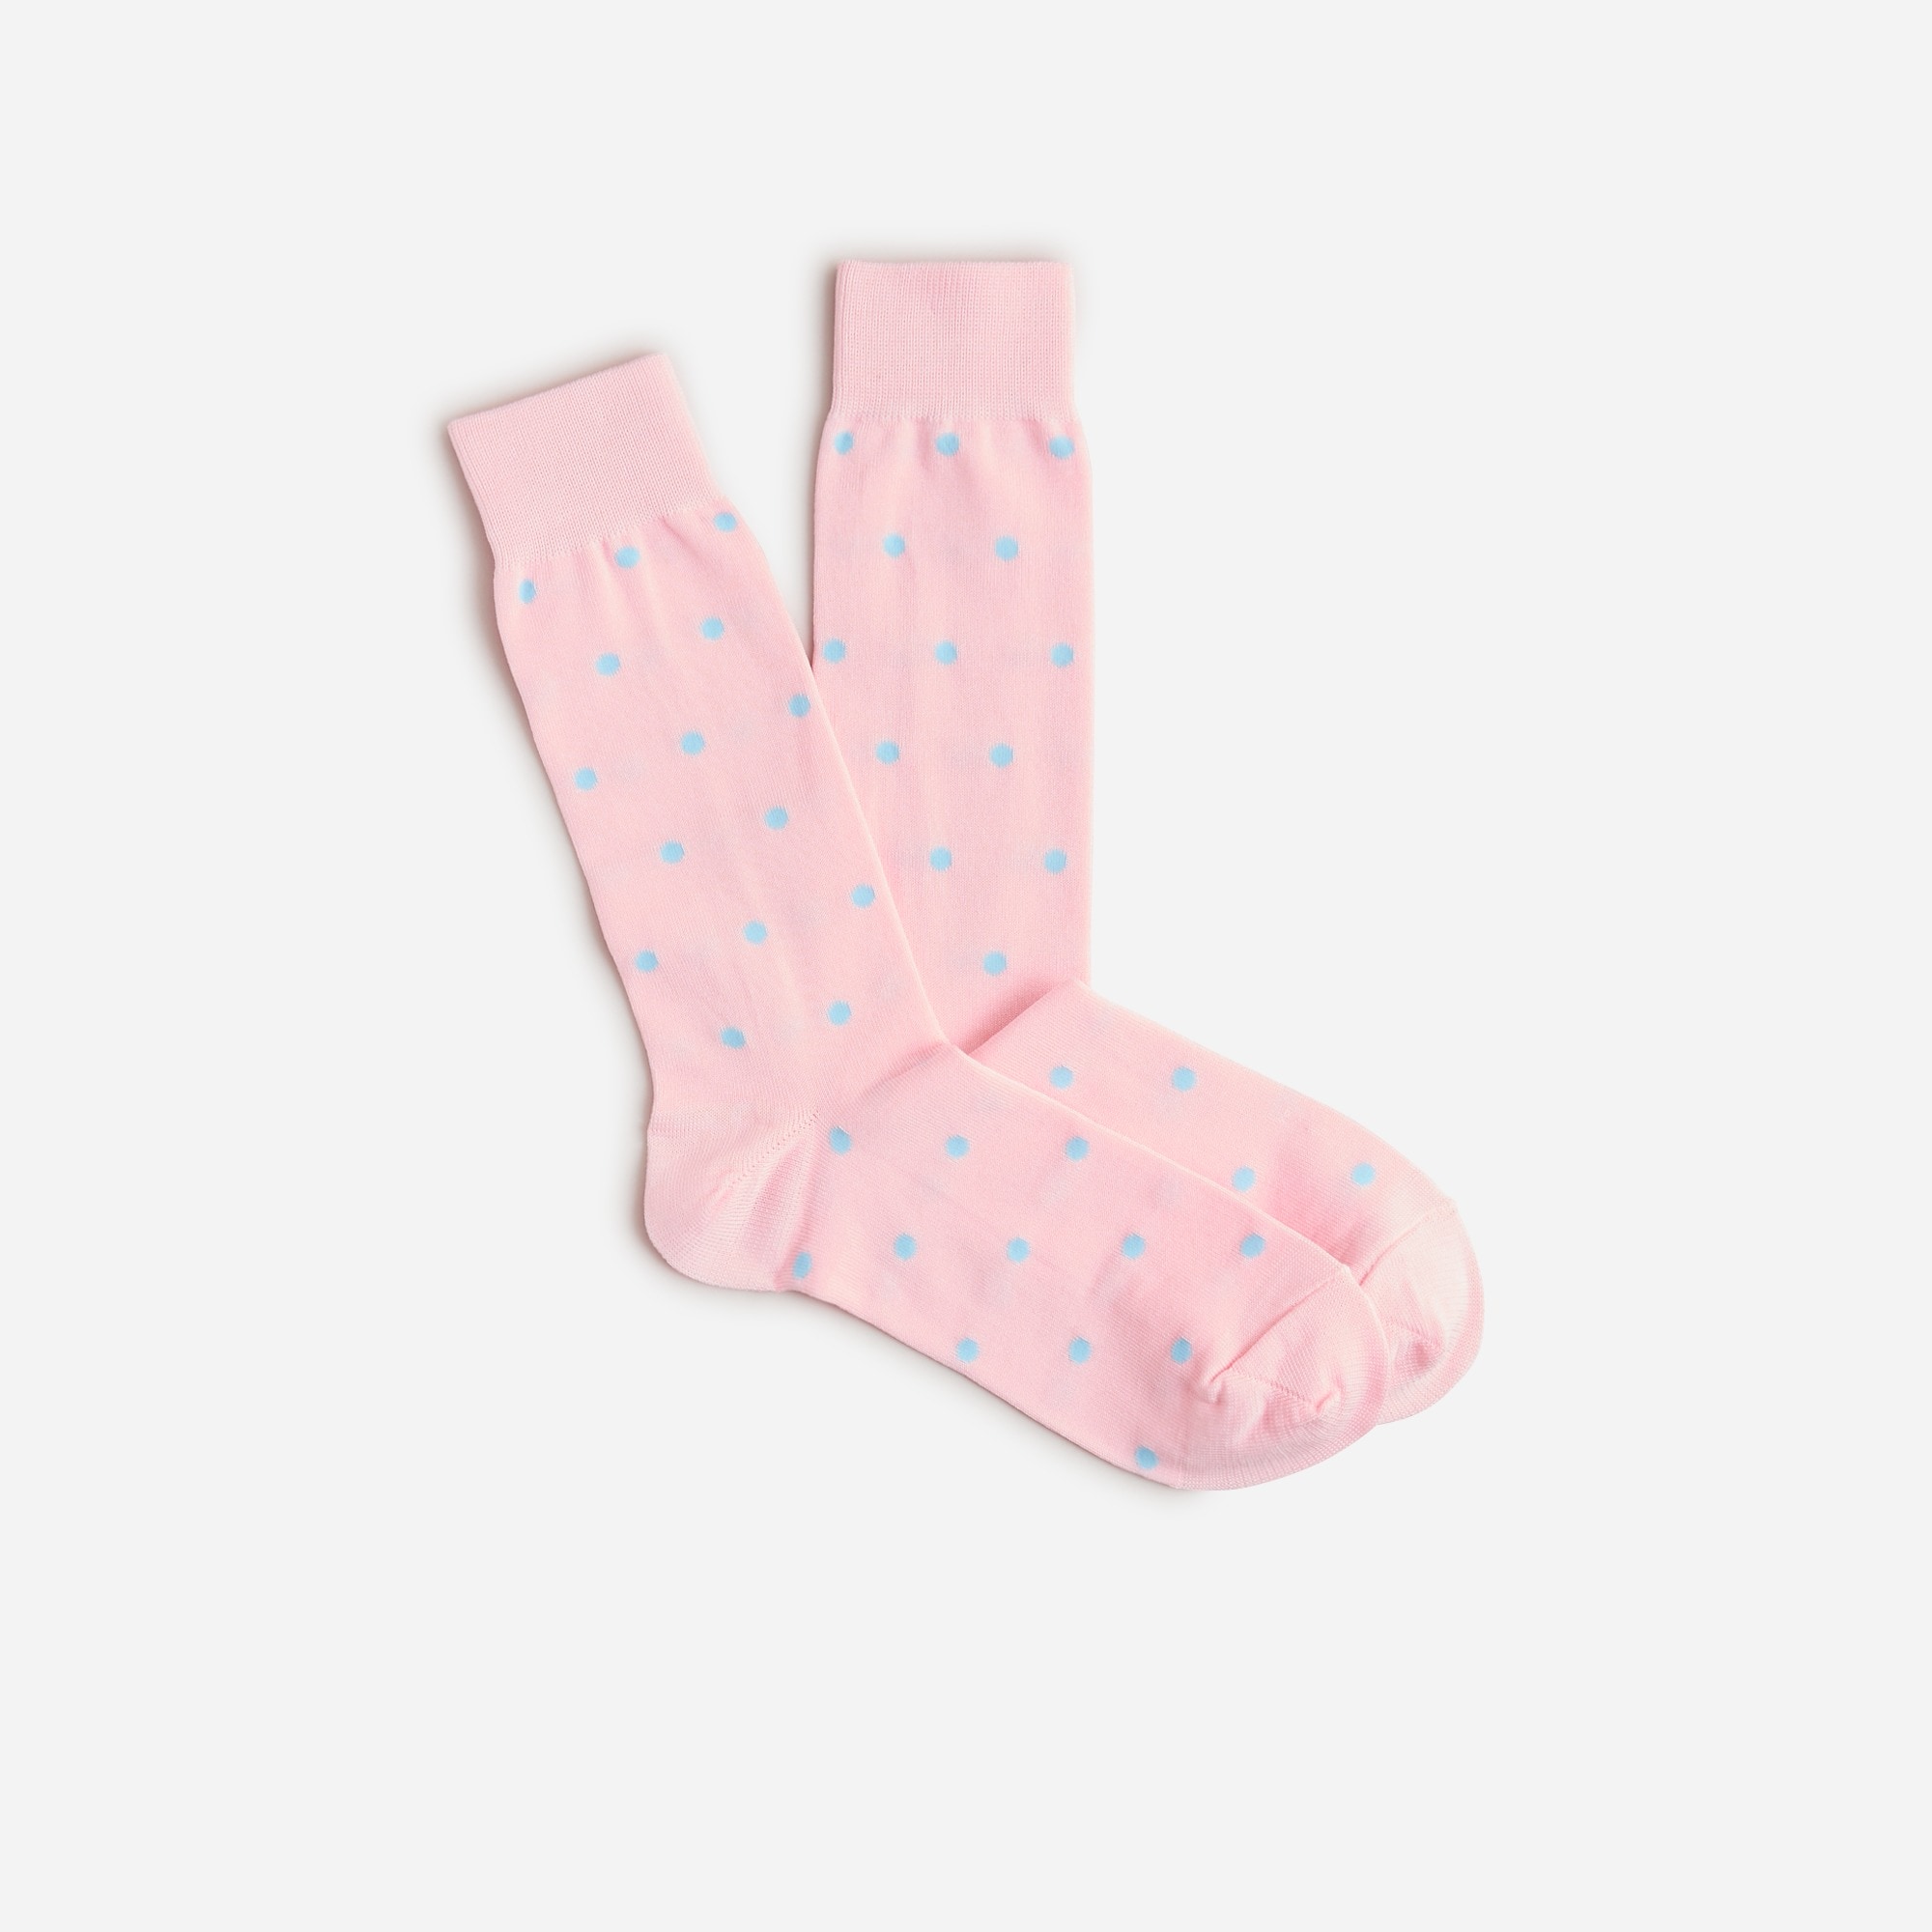 Jcrew Dress socks in dots